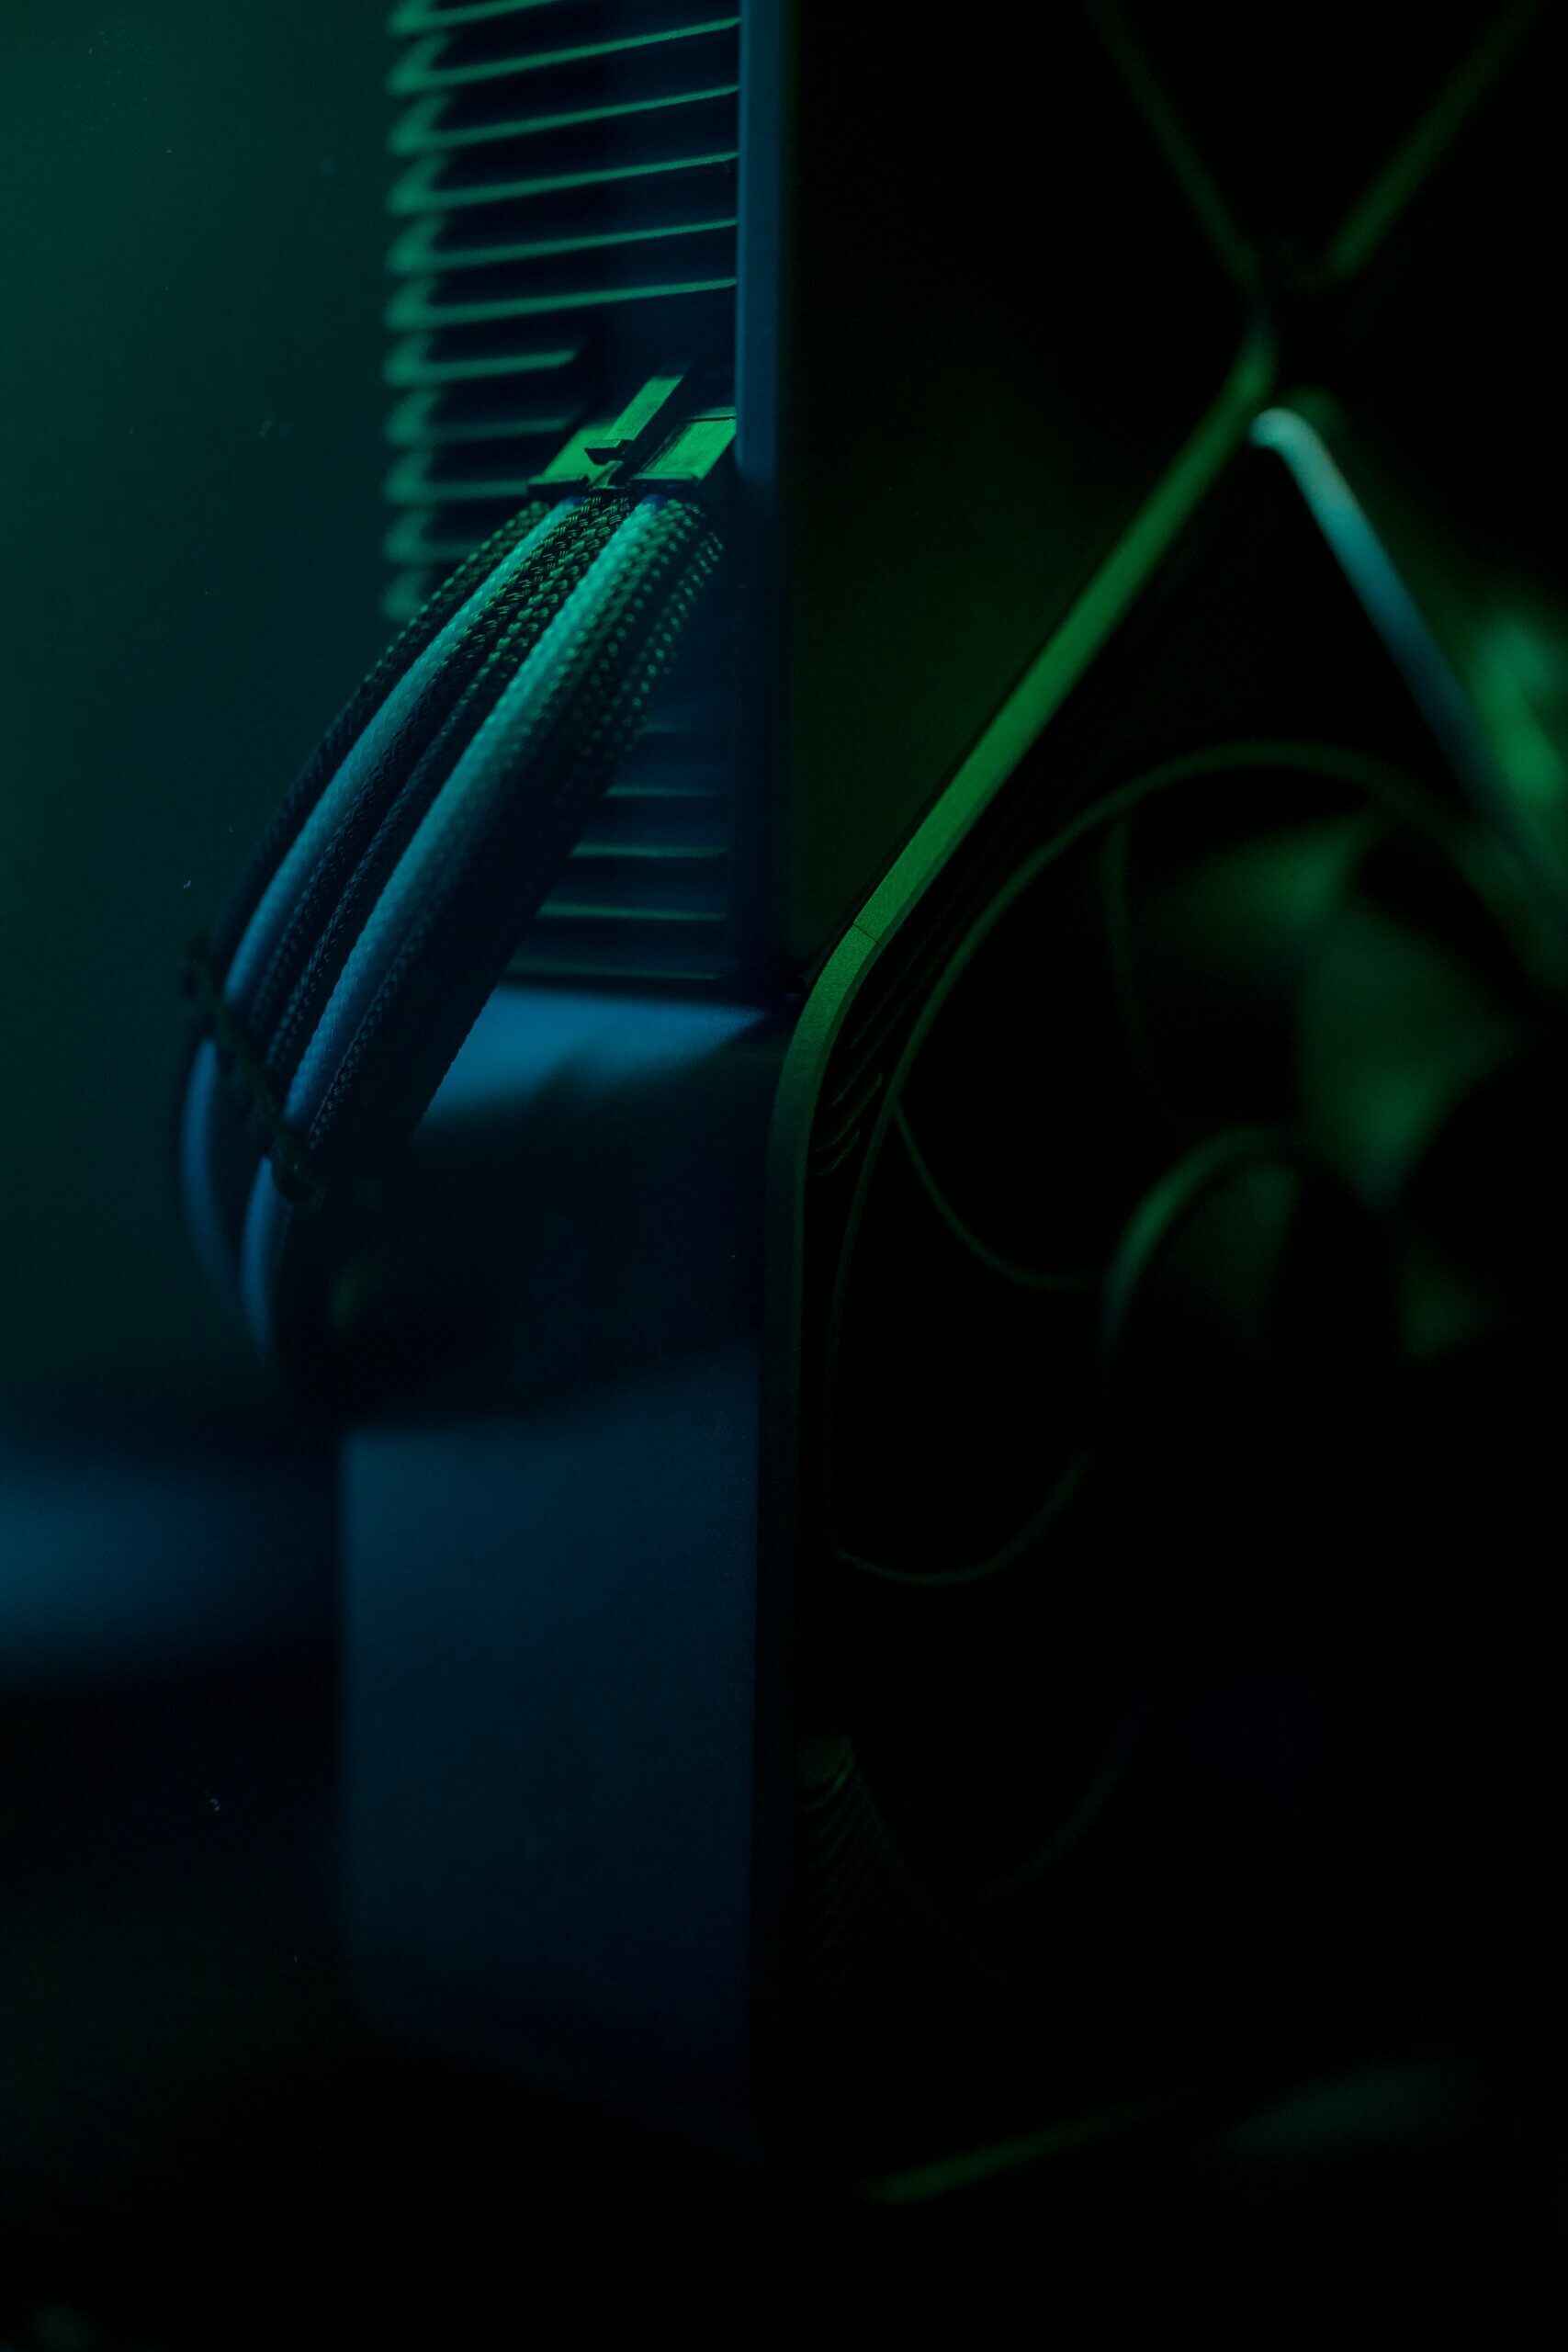 Kilka kabli wpiętych do komputera w przyciemnionym pomieszczeniu, z delikatną zieloną poświatą